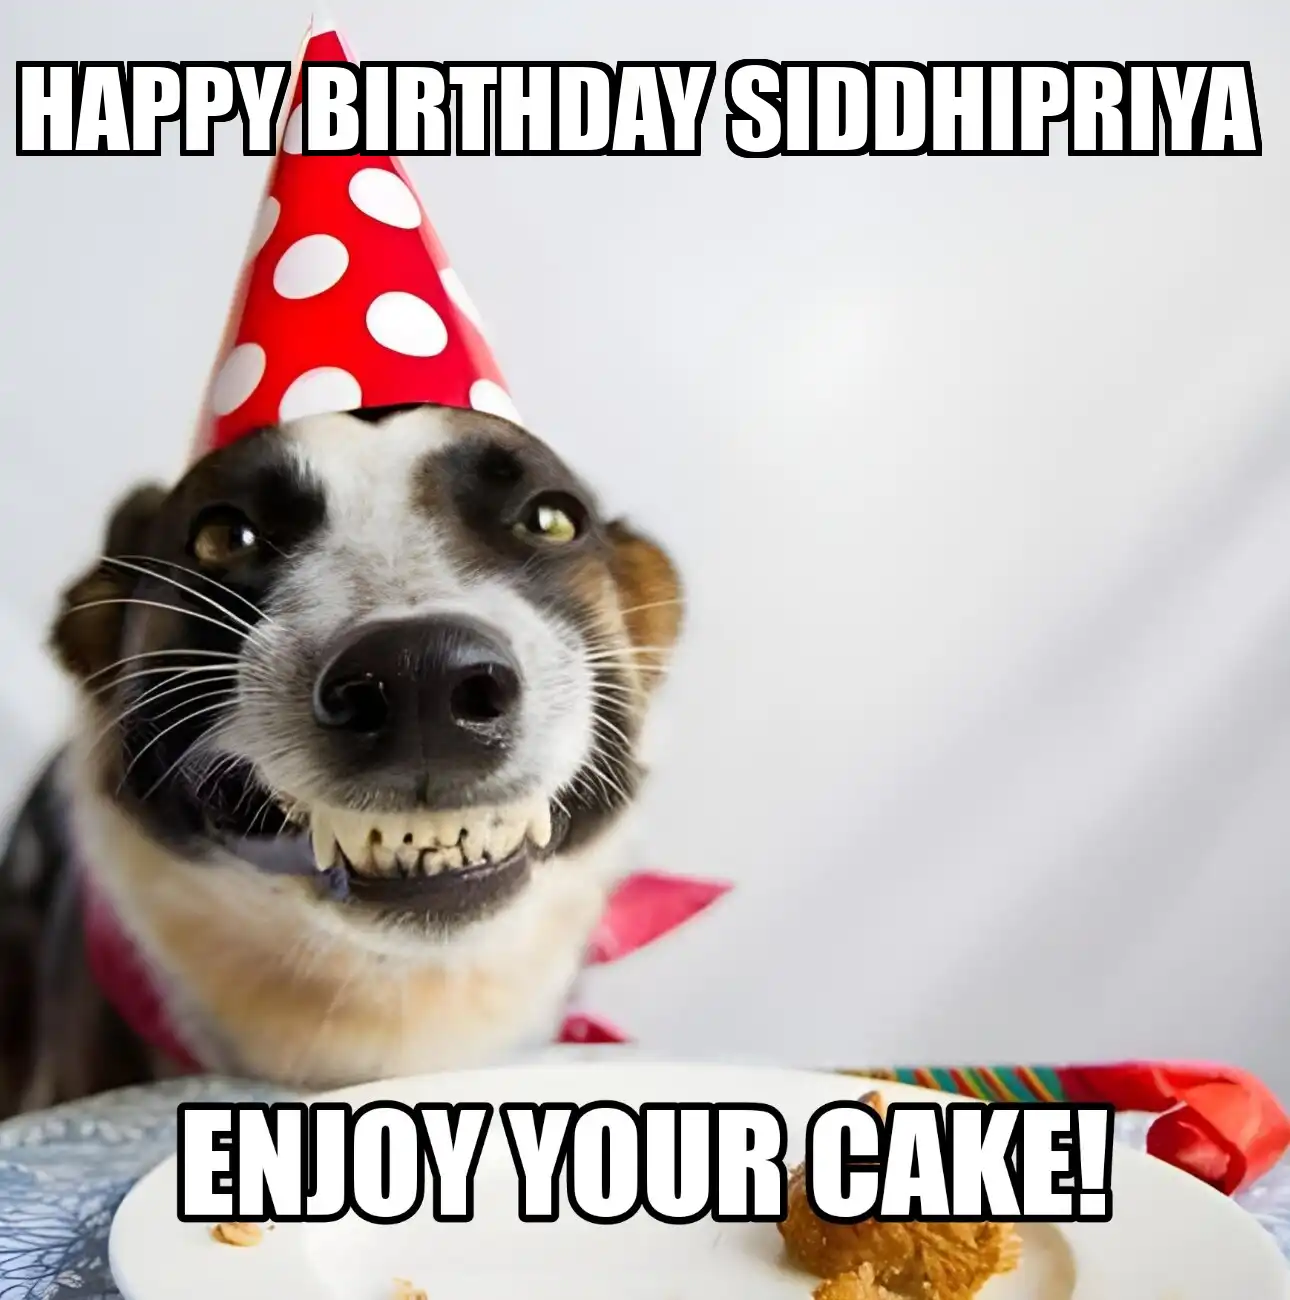 Happy Birthday Siddhipriya Enjoy Your Cake Dog Meme